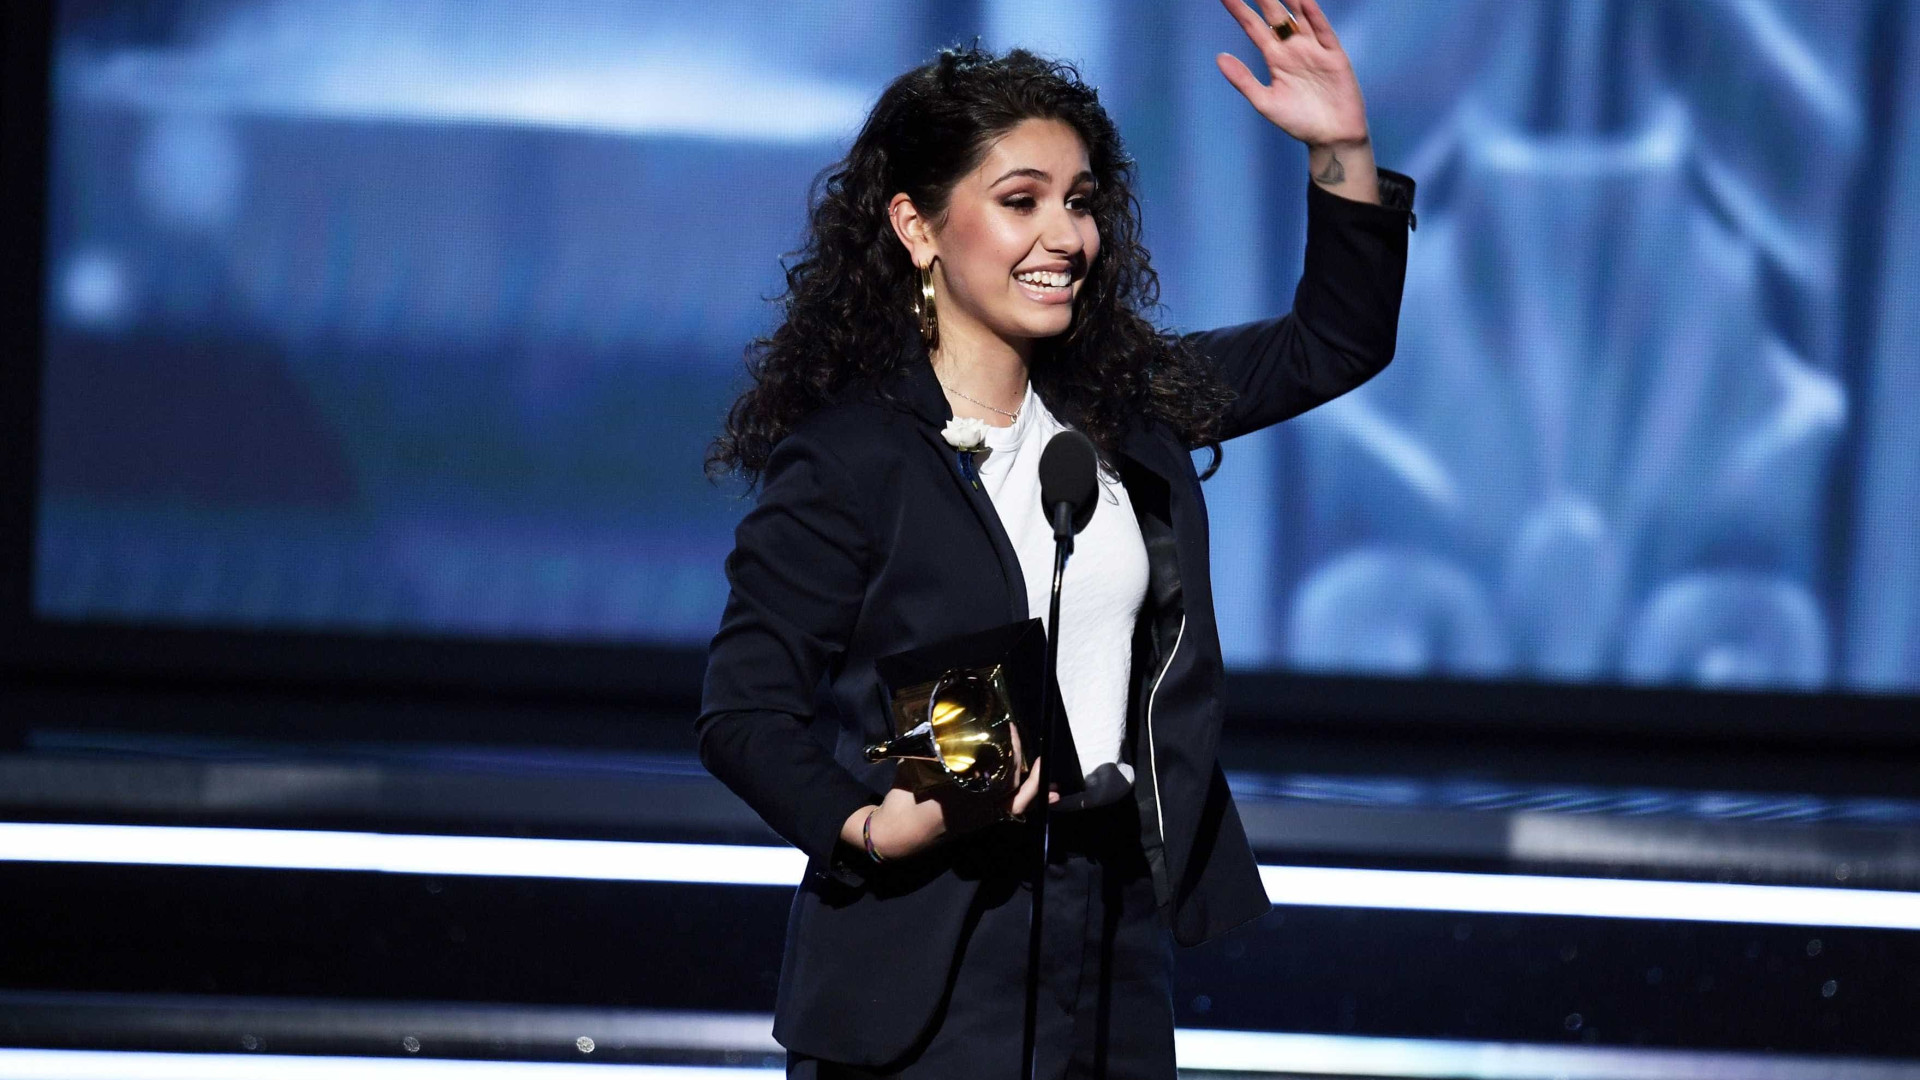 Conheça Alessia Cara, artista revelação do Grammy 2018
